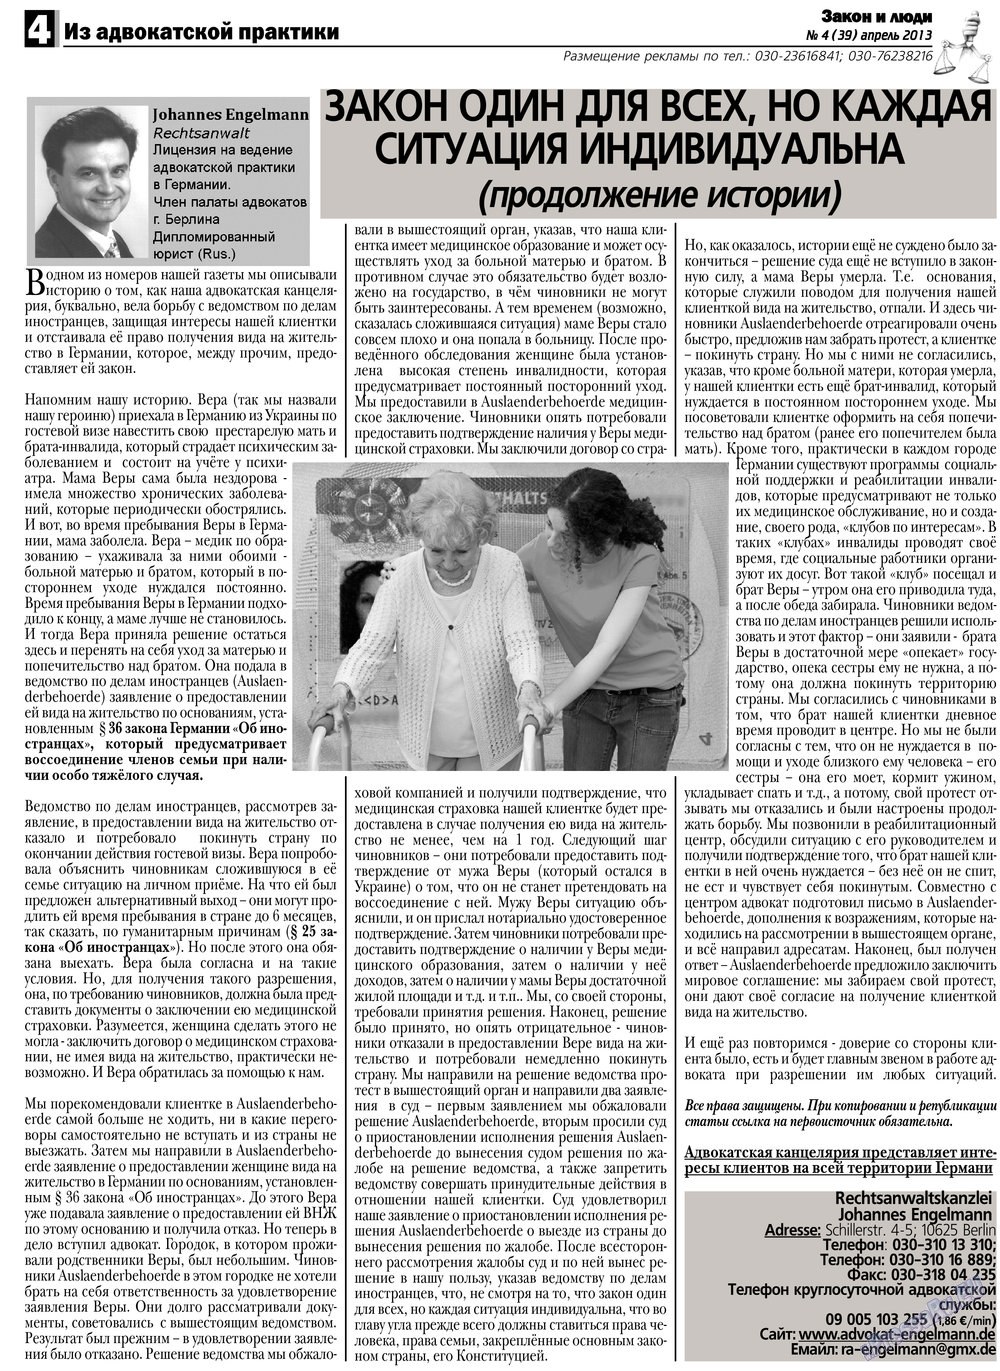 Закон и люди, газета. 2013 №4 стр.4